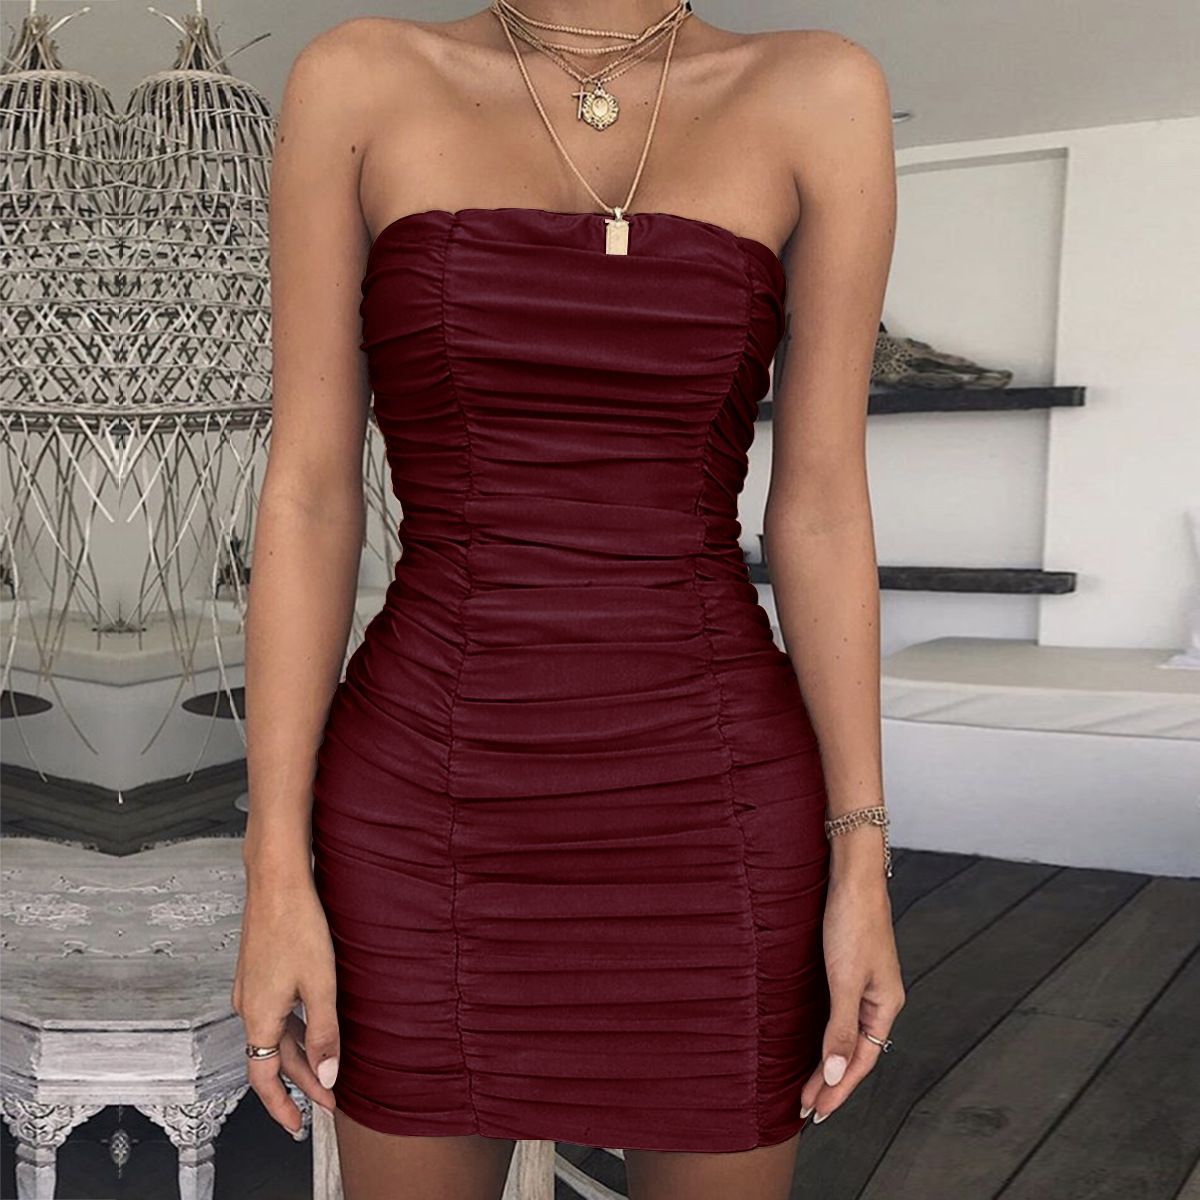 15 mini dress Tight ideas